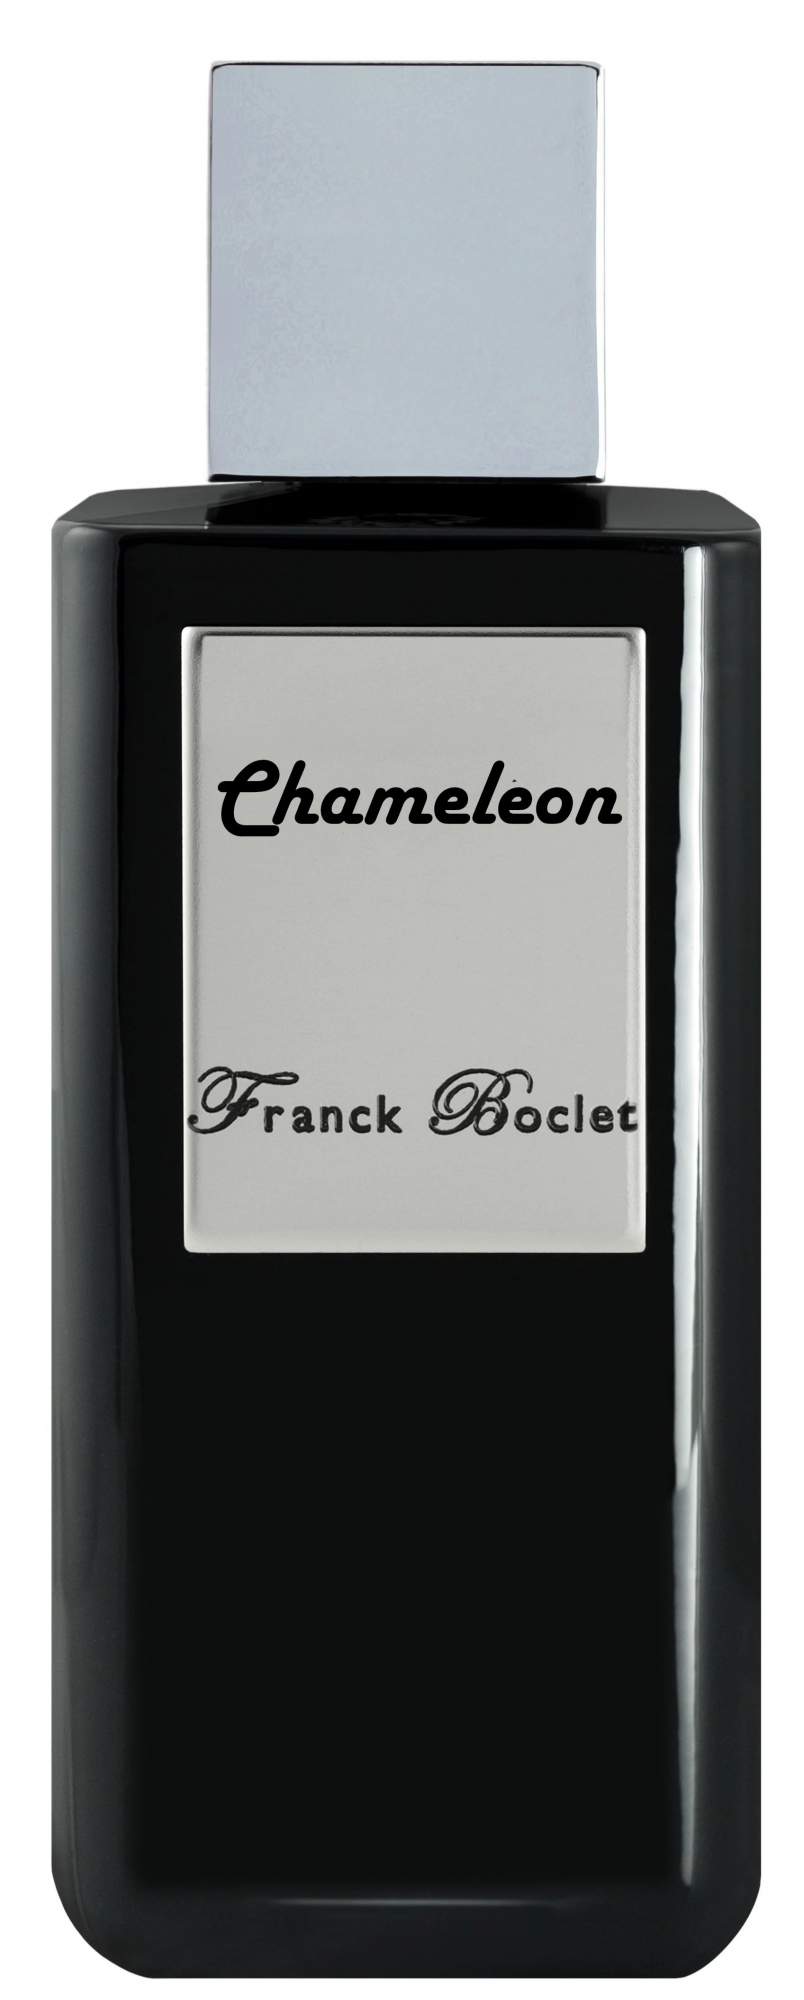 Парфюмерная вода Franck Boclet Chameleon 100мл - купить в ООО "Бьютидепо", цена на Мегамаркет